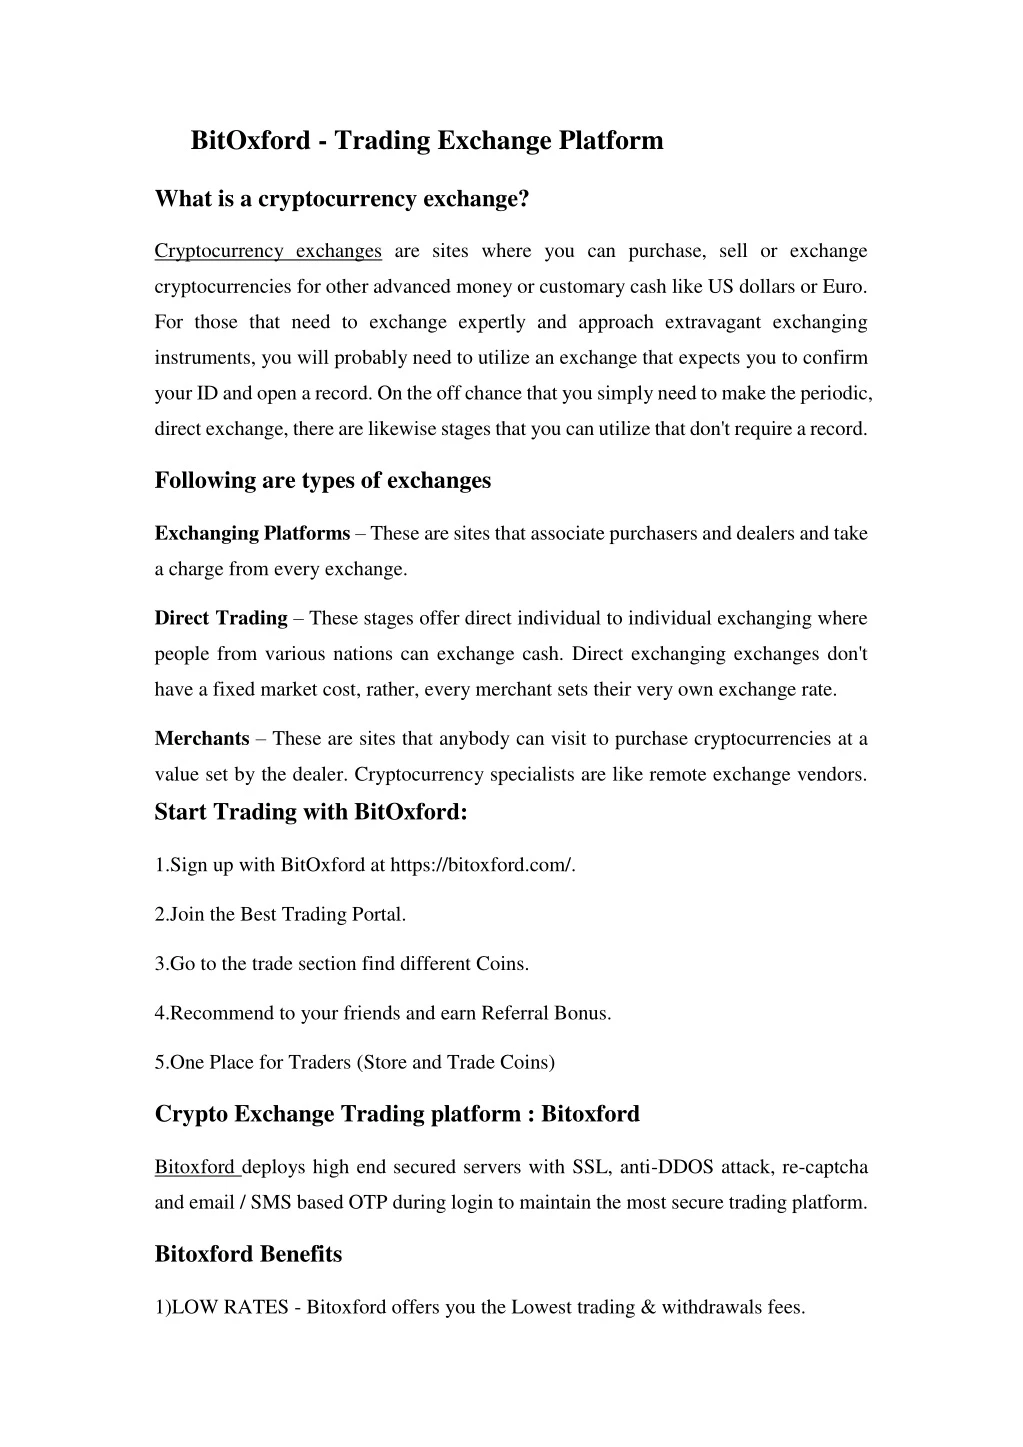 bitoxford trading exchange platform